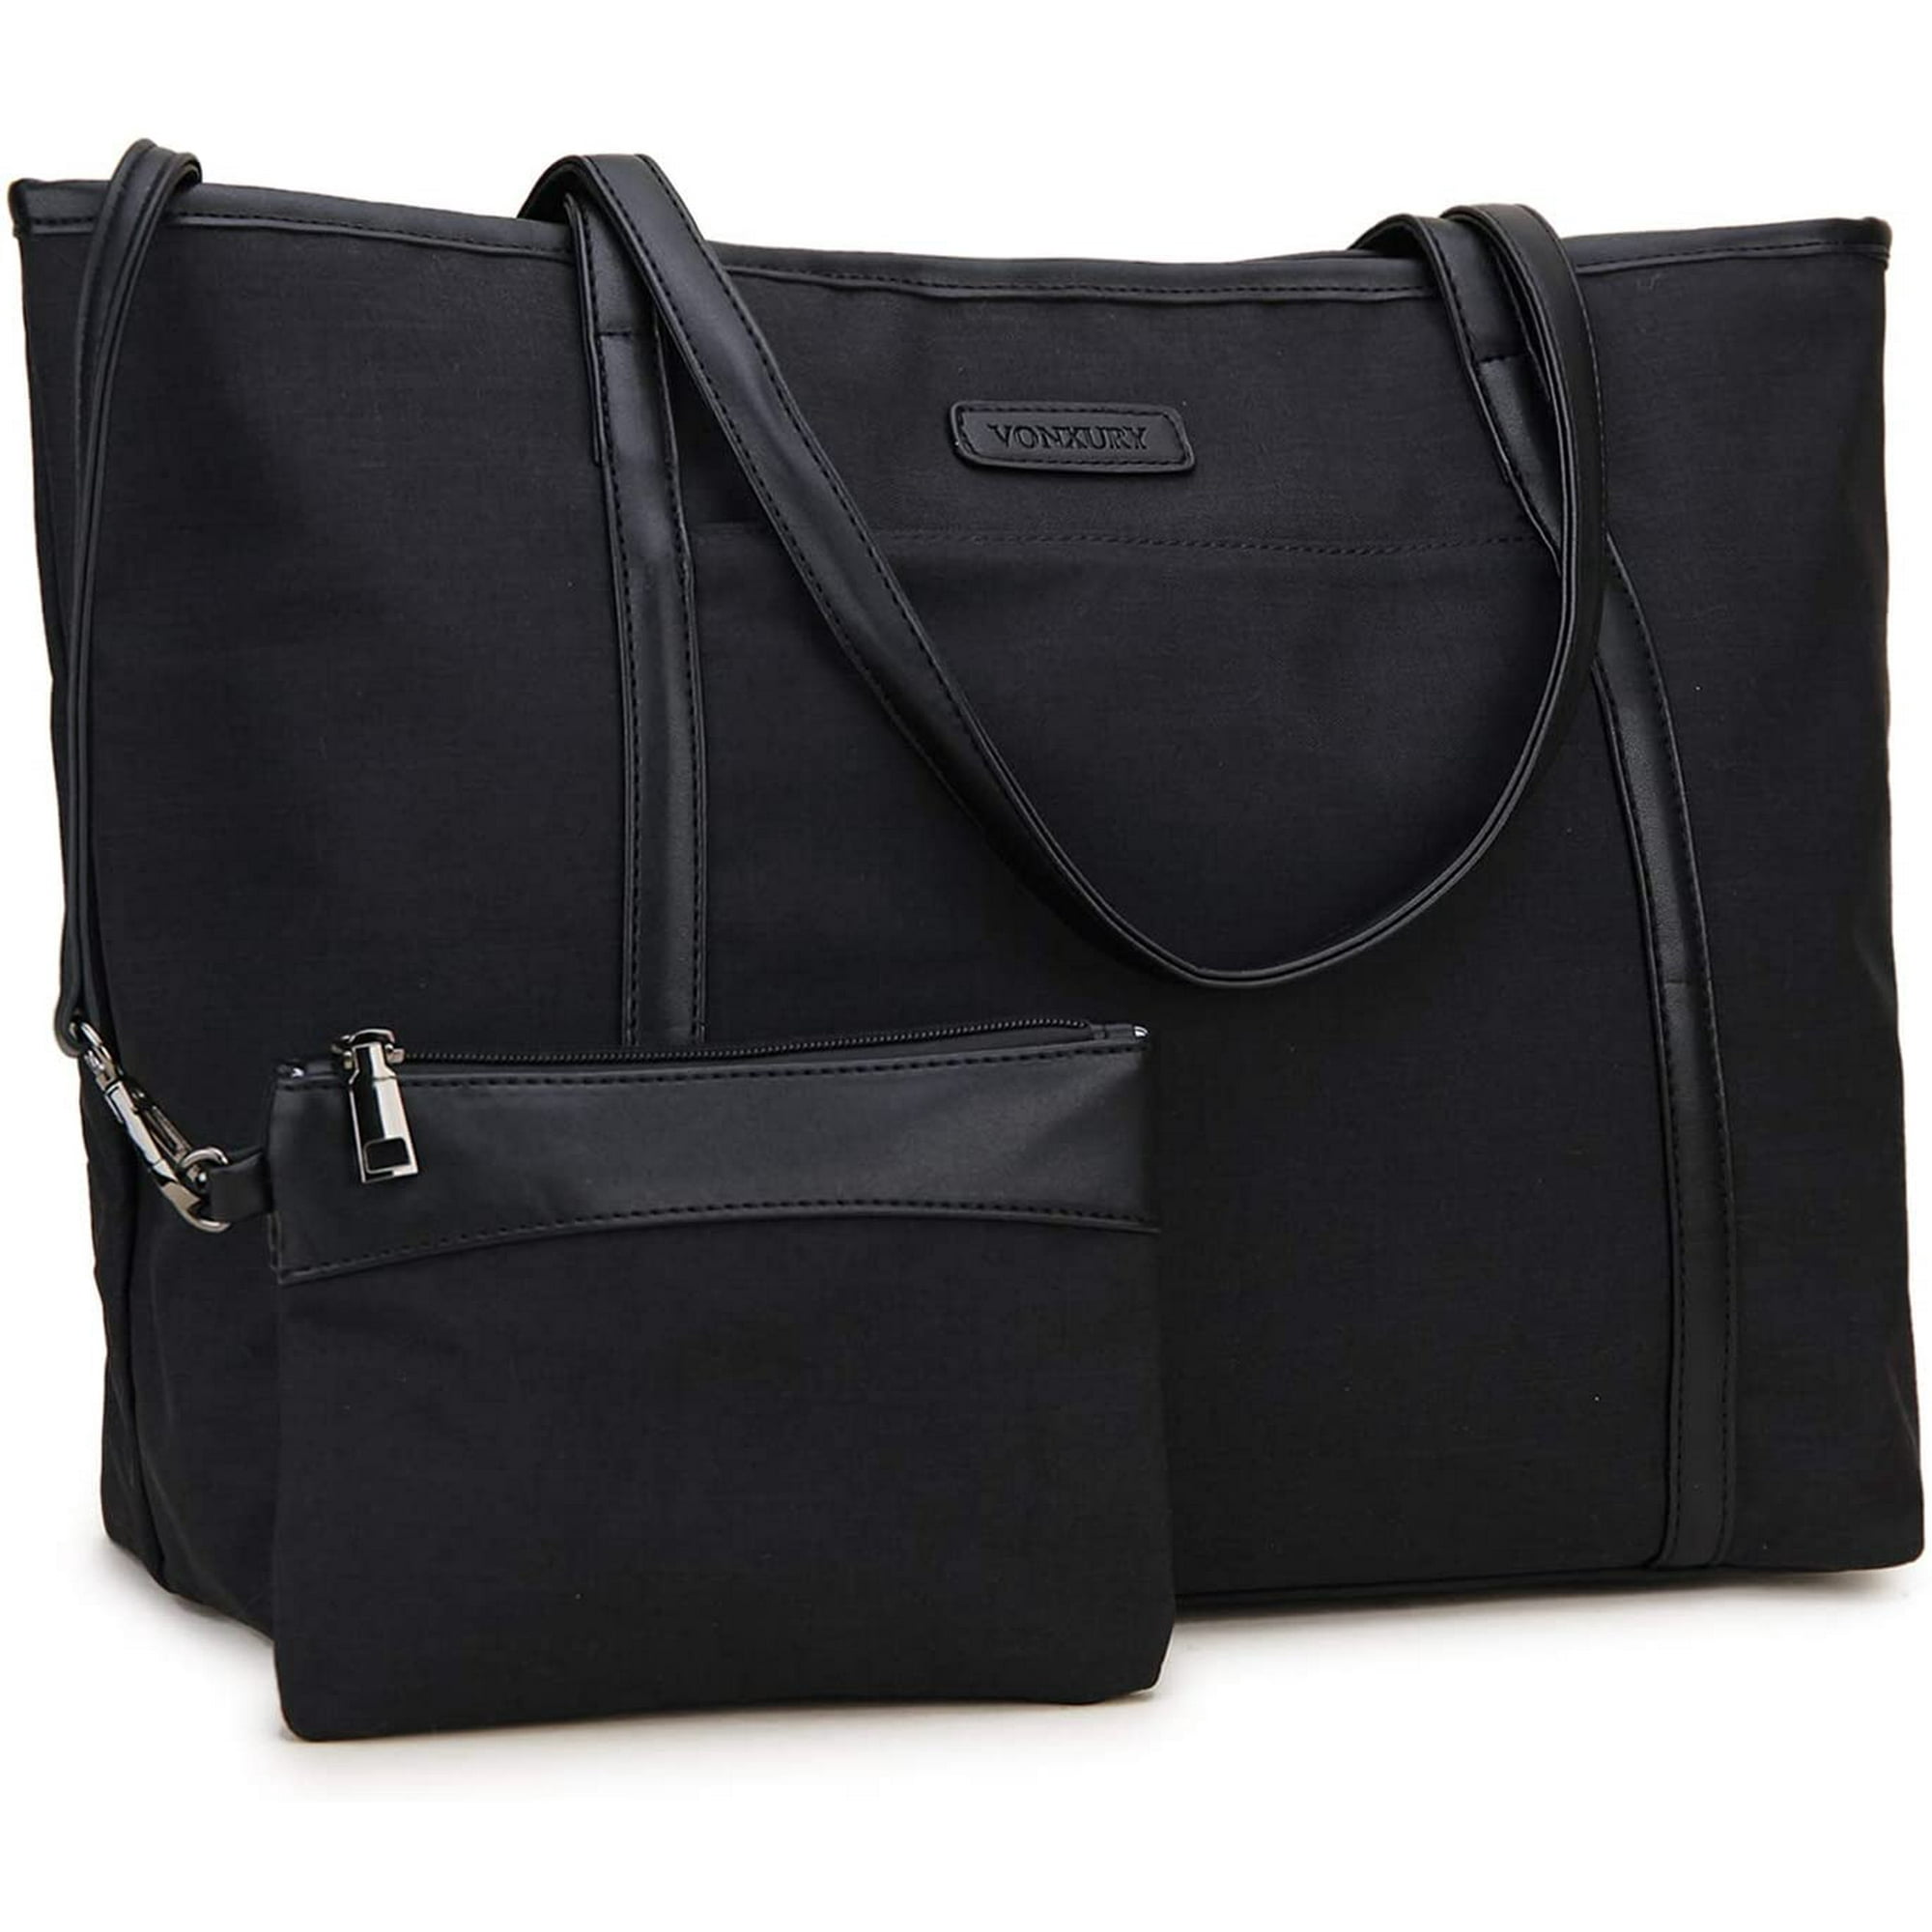 Hobo Bag for Women,VONXURY Fashion Ladies Purse Handbag Faux